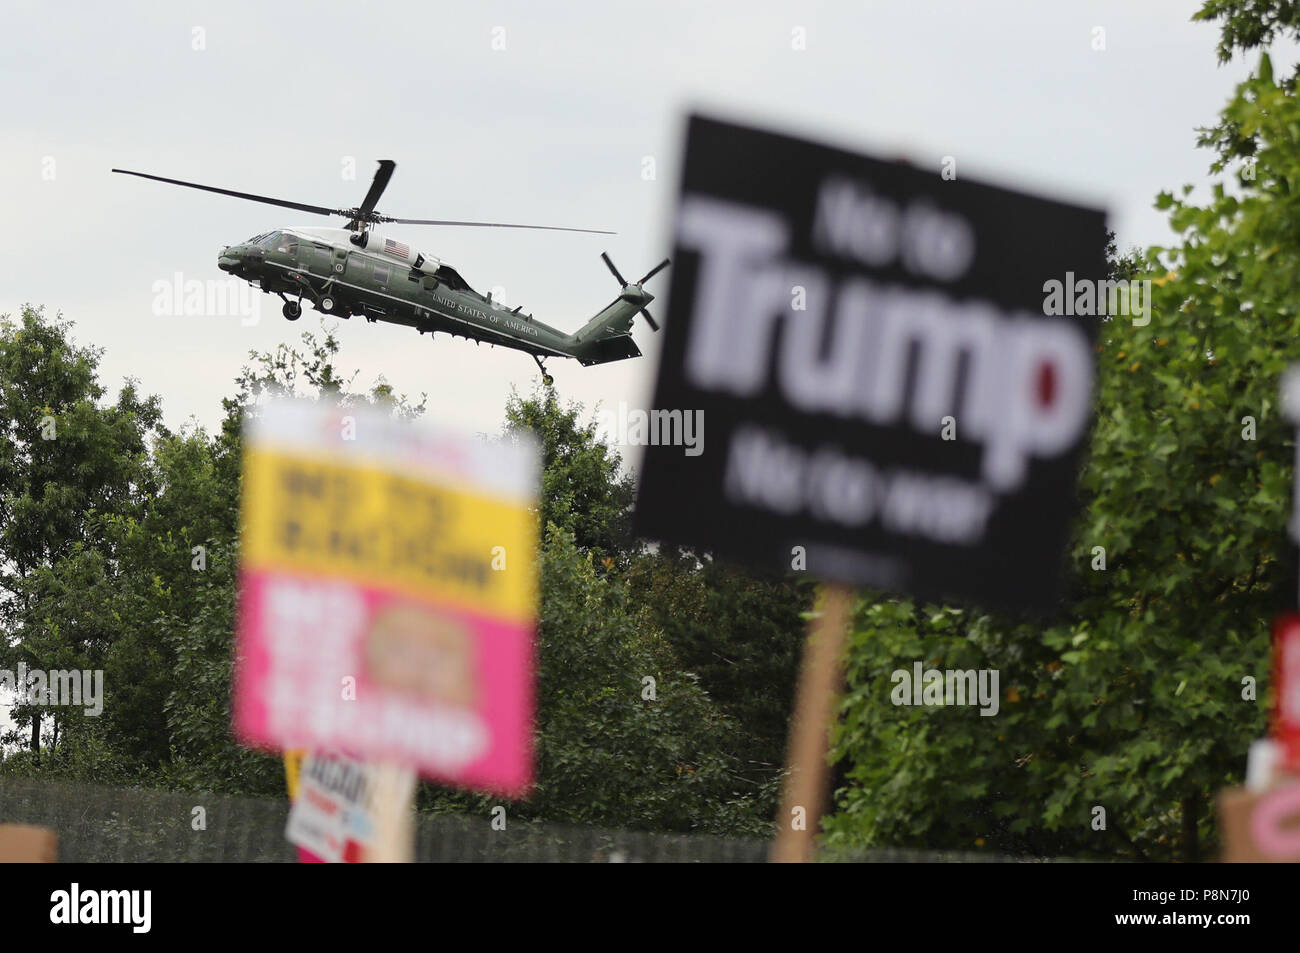 Un helicóptero presidencial estadounidense aterriza en los terrenos de la residencia del embajador estadounidense en Regent's Park, Londres, mientras que los manifestantes se reúnen como parte de las protestas contra la visita del presidente estadounidense Donald Trump en el Reino Unido. Foto de stock